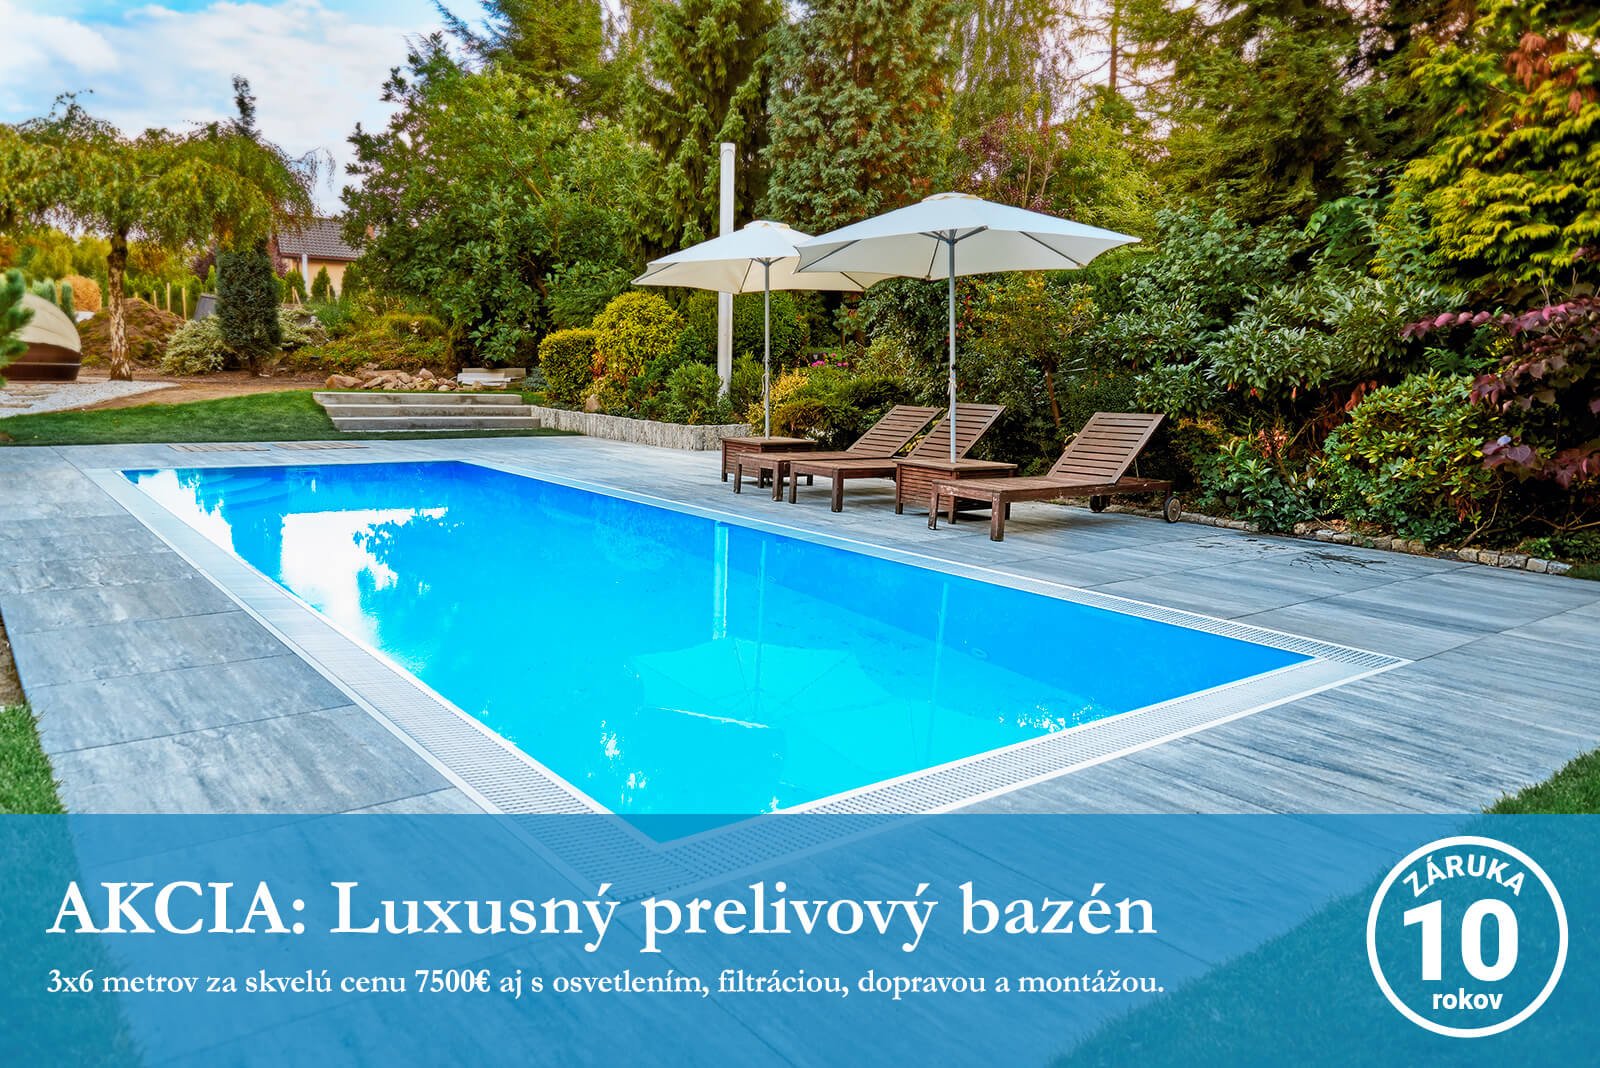 AKCIA: Luxusný prelivový bazén za skvelú cenu